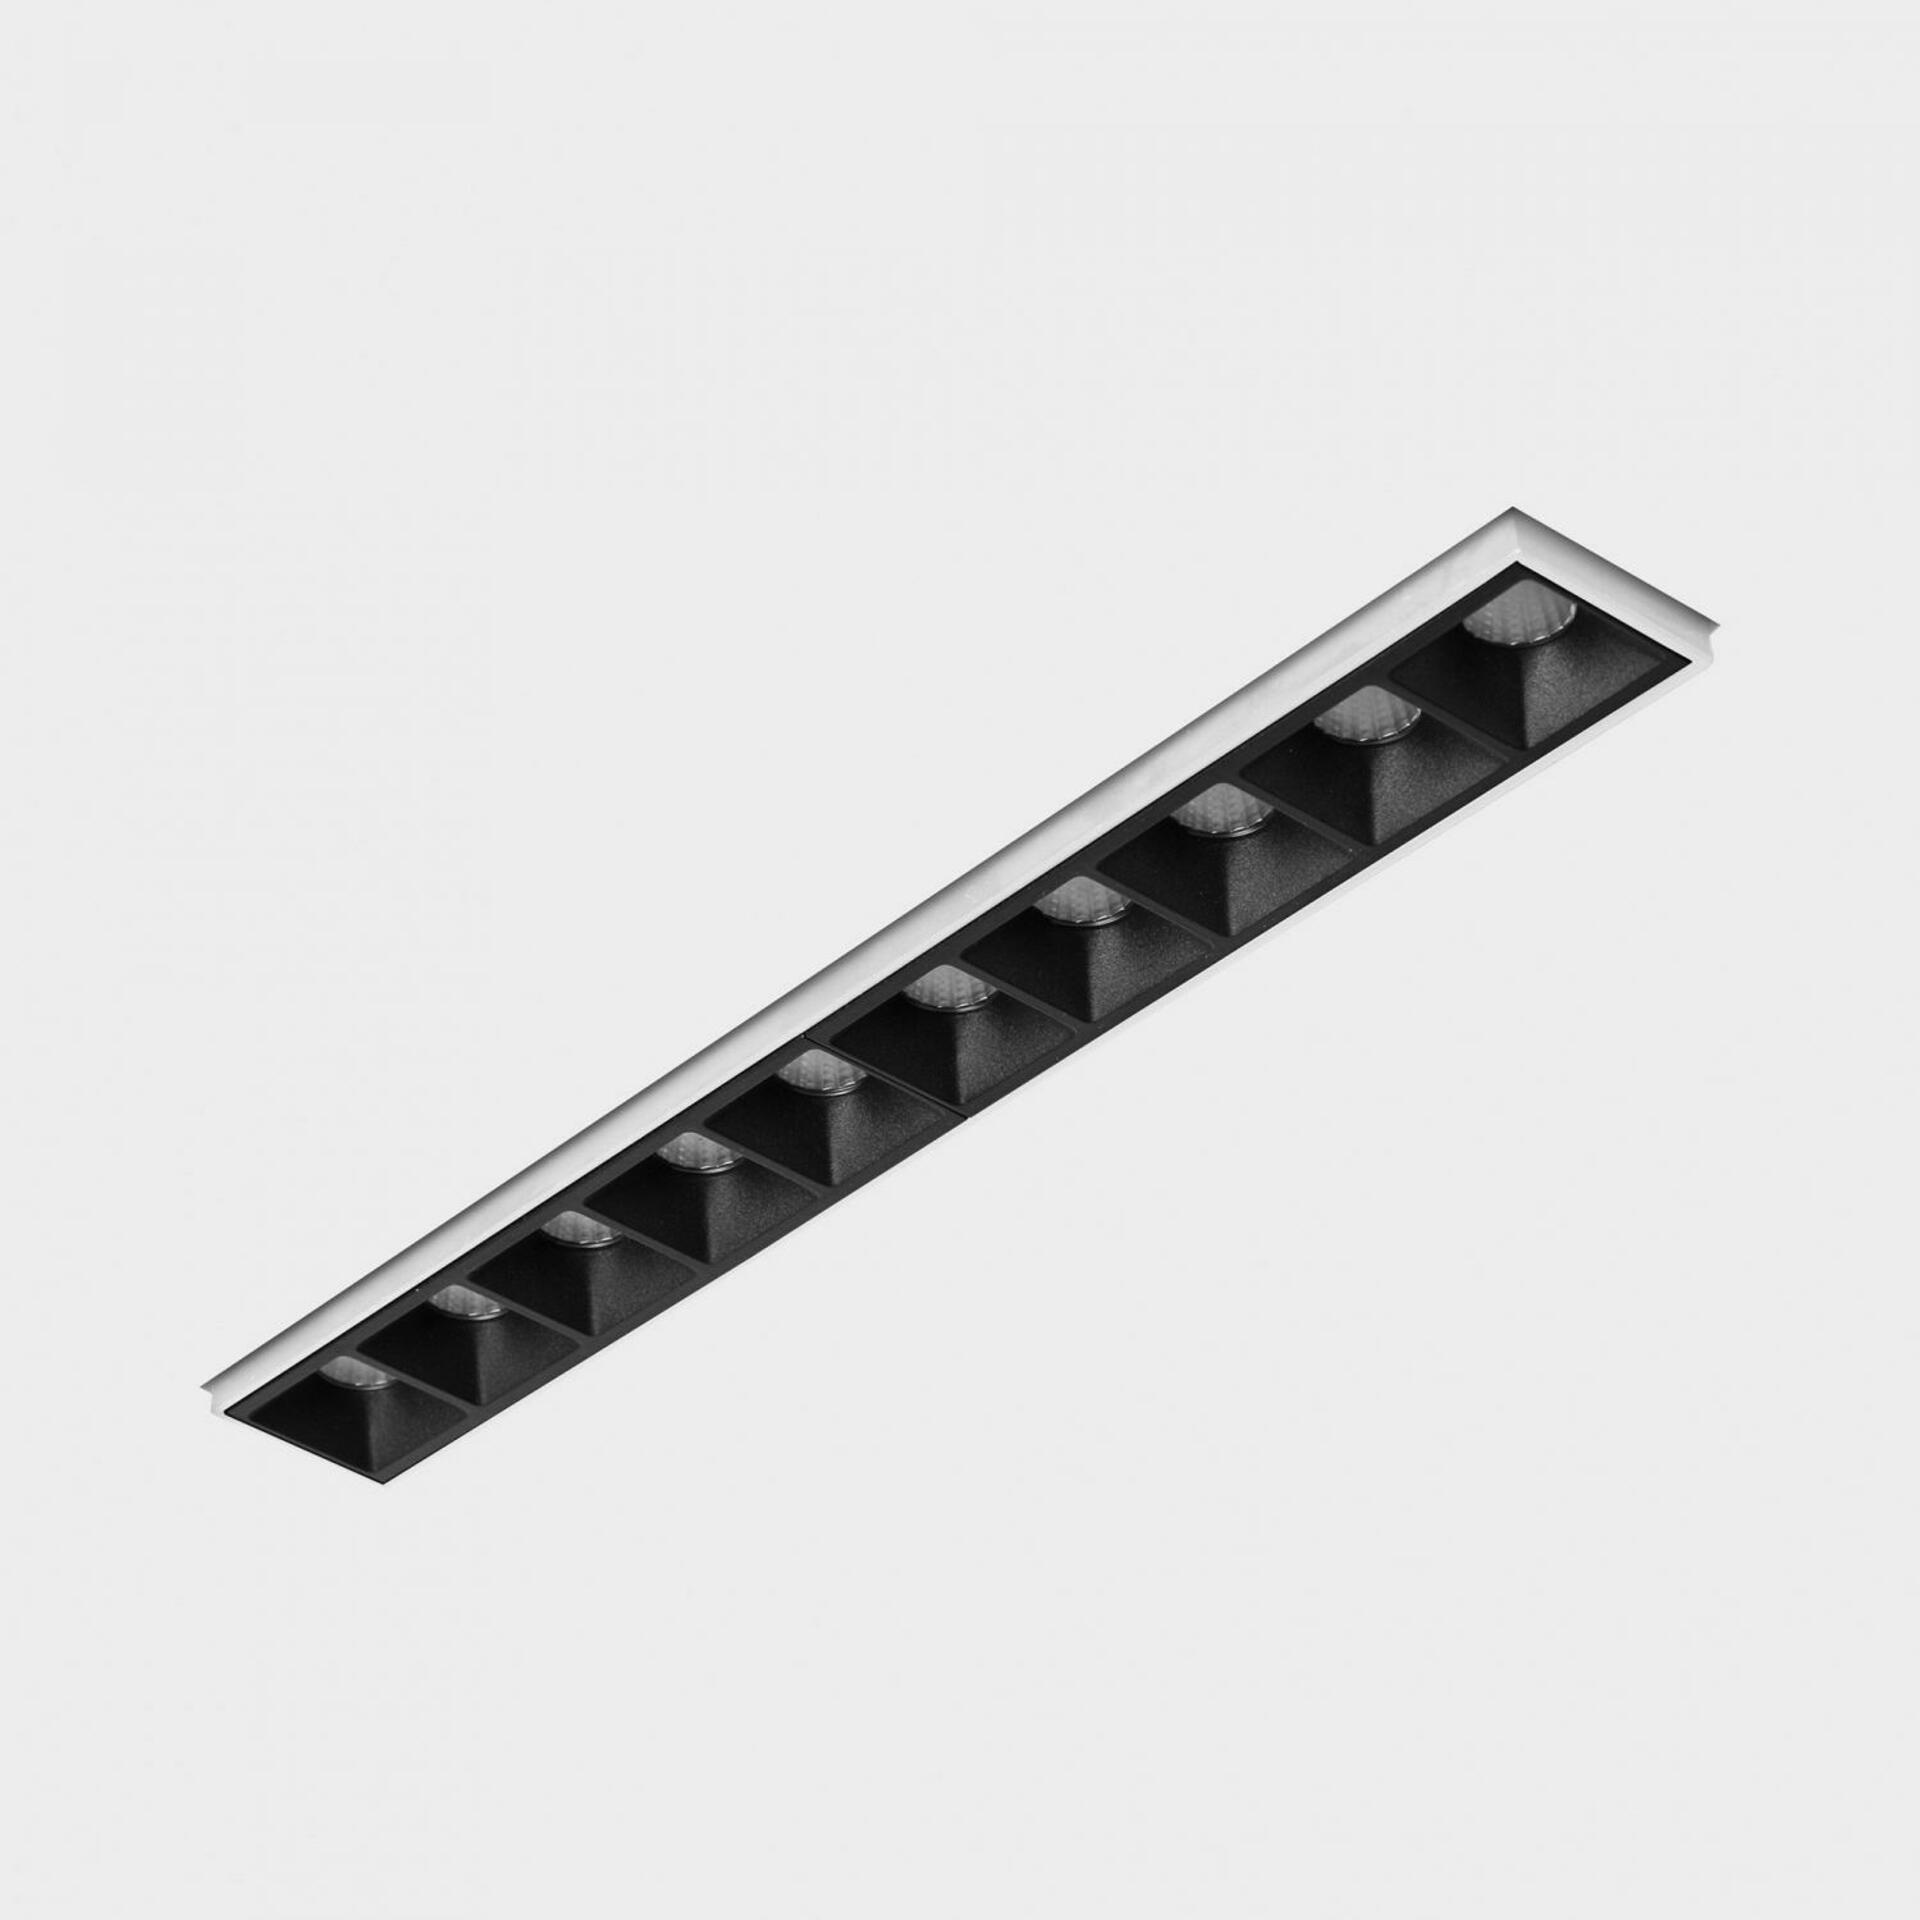 KOHL LIGHTING KOHL-Lighting NSES bezrámečkové zapuštěné svítidlo 270x35 mm bílá-černá 20 W CRI 90 3000K 1.10V